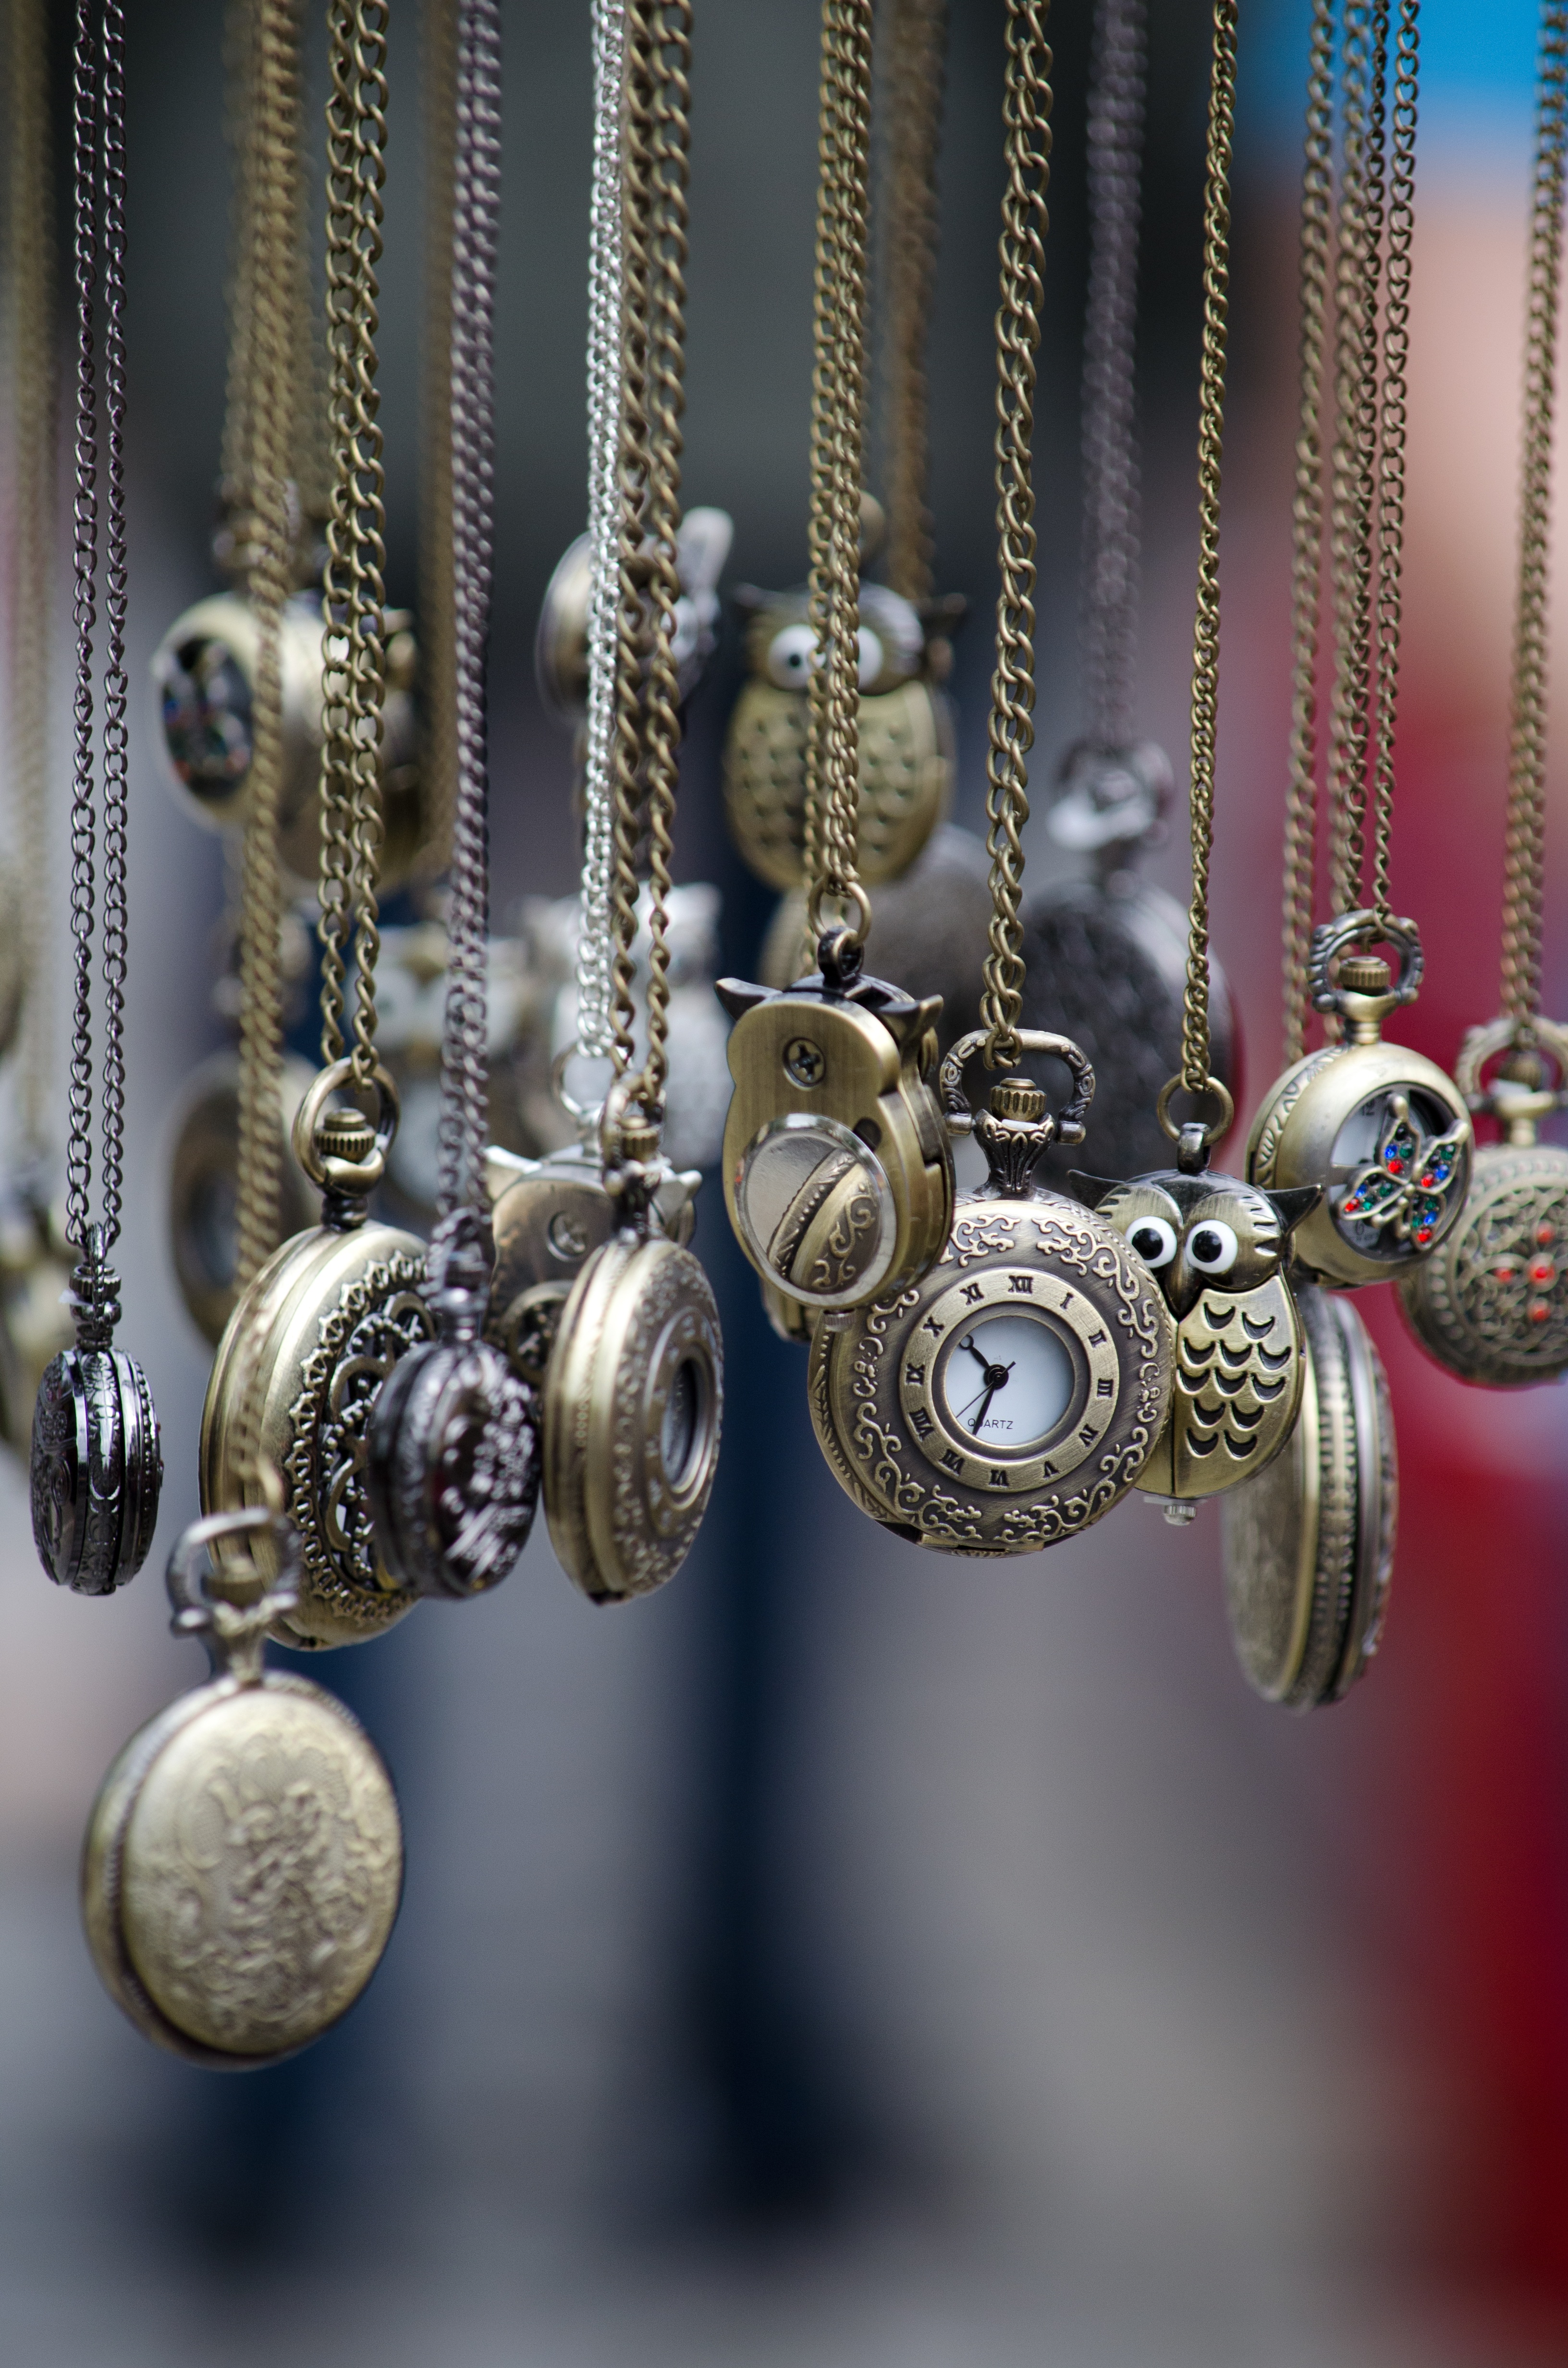 chains, miscellanea, miscellaneous, antique, pocket watch, antiques, brass QHD